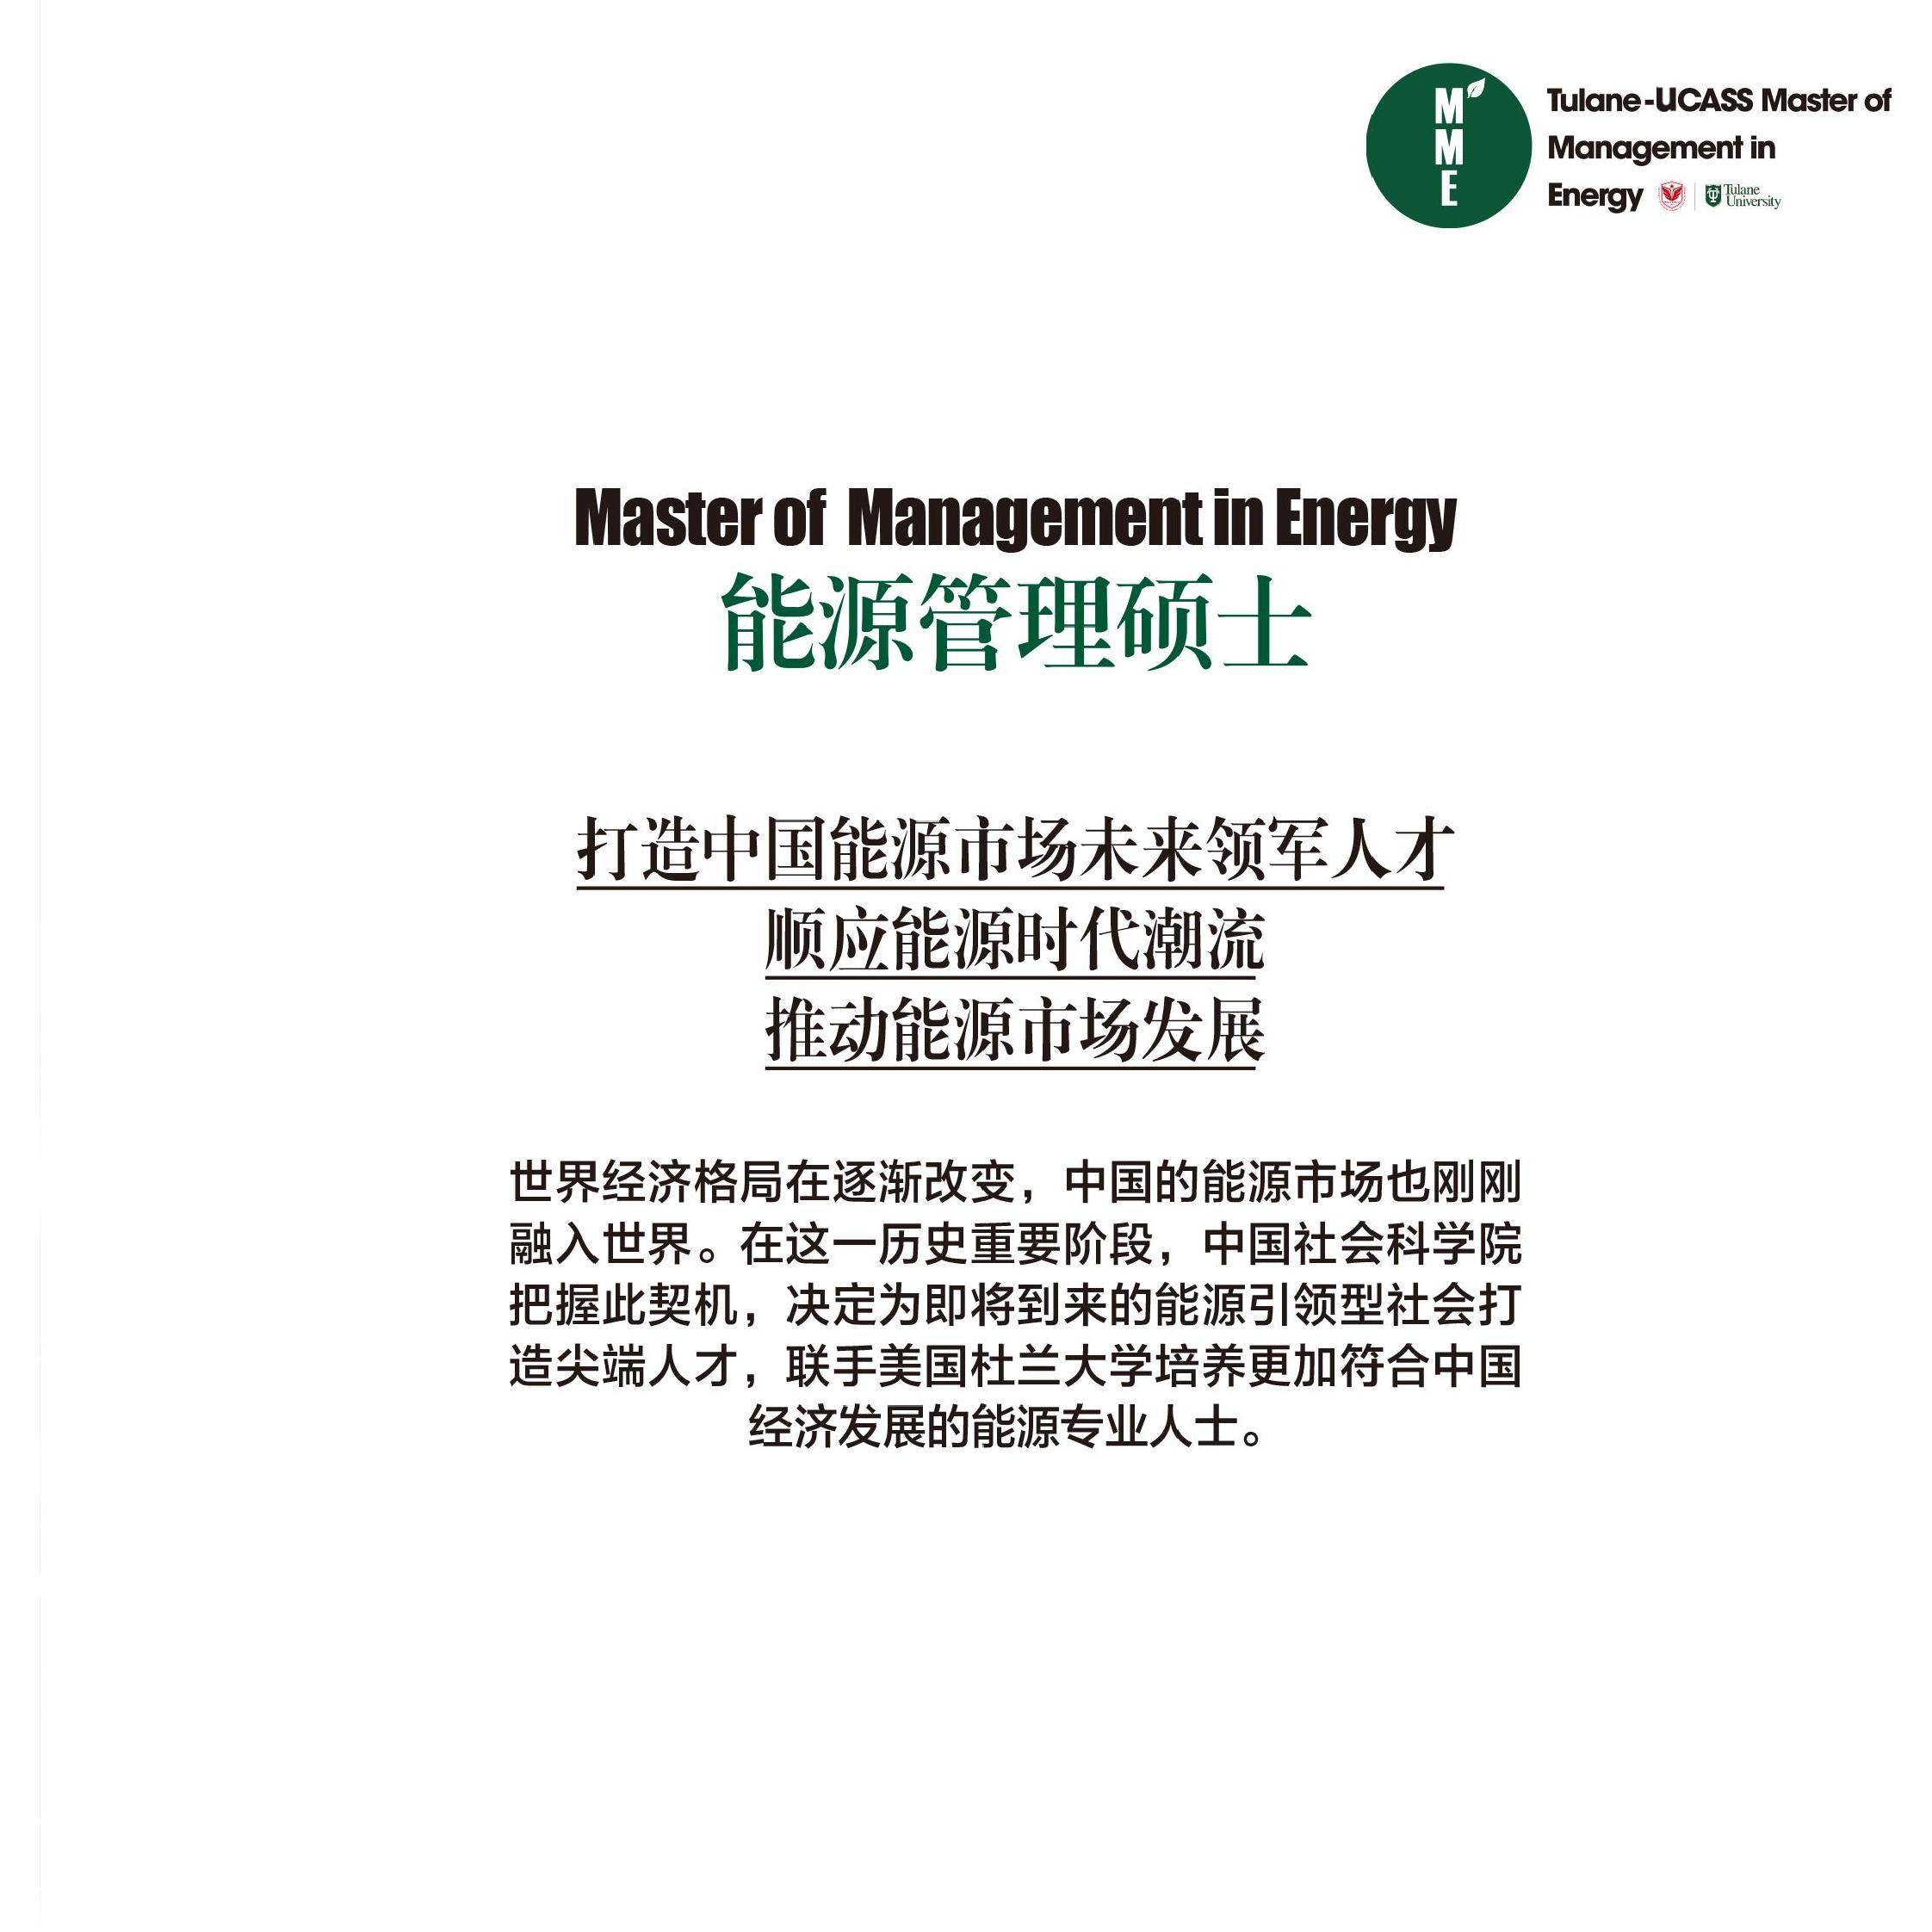 中国社科大美国杜兰大学免考双证能源管理硕士在职研究生能获得哪些证书？